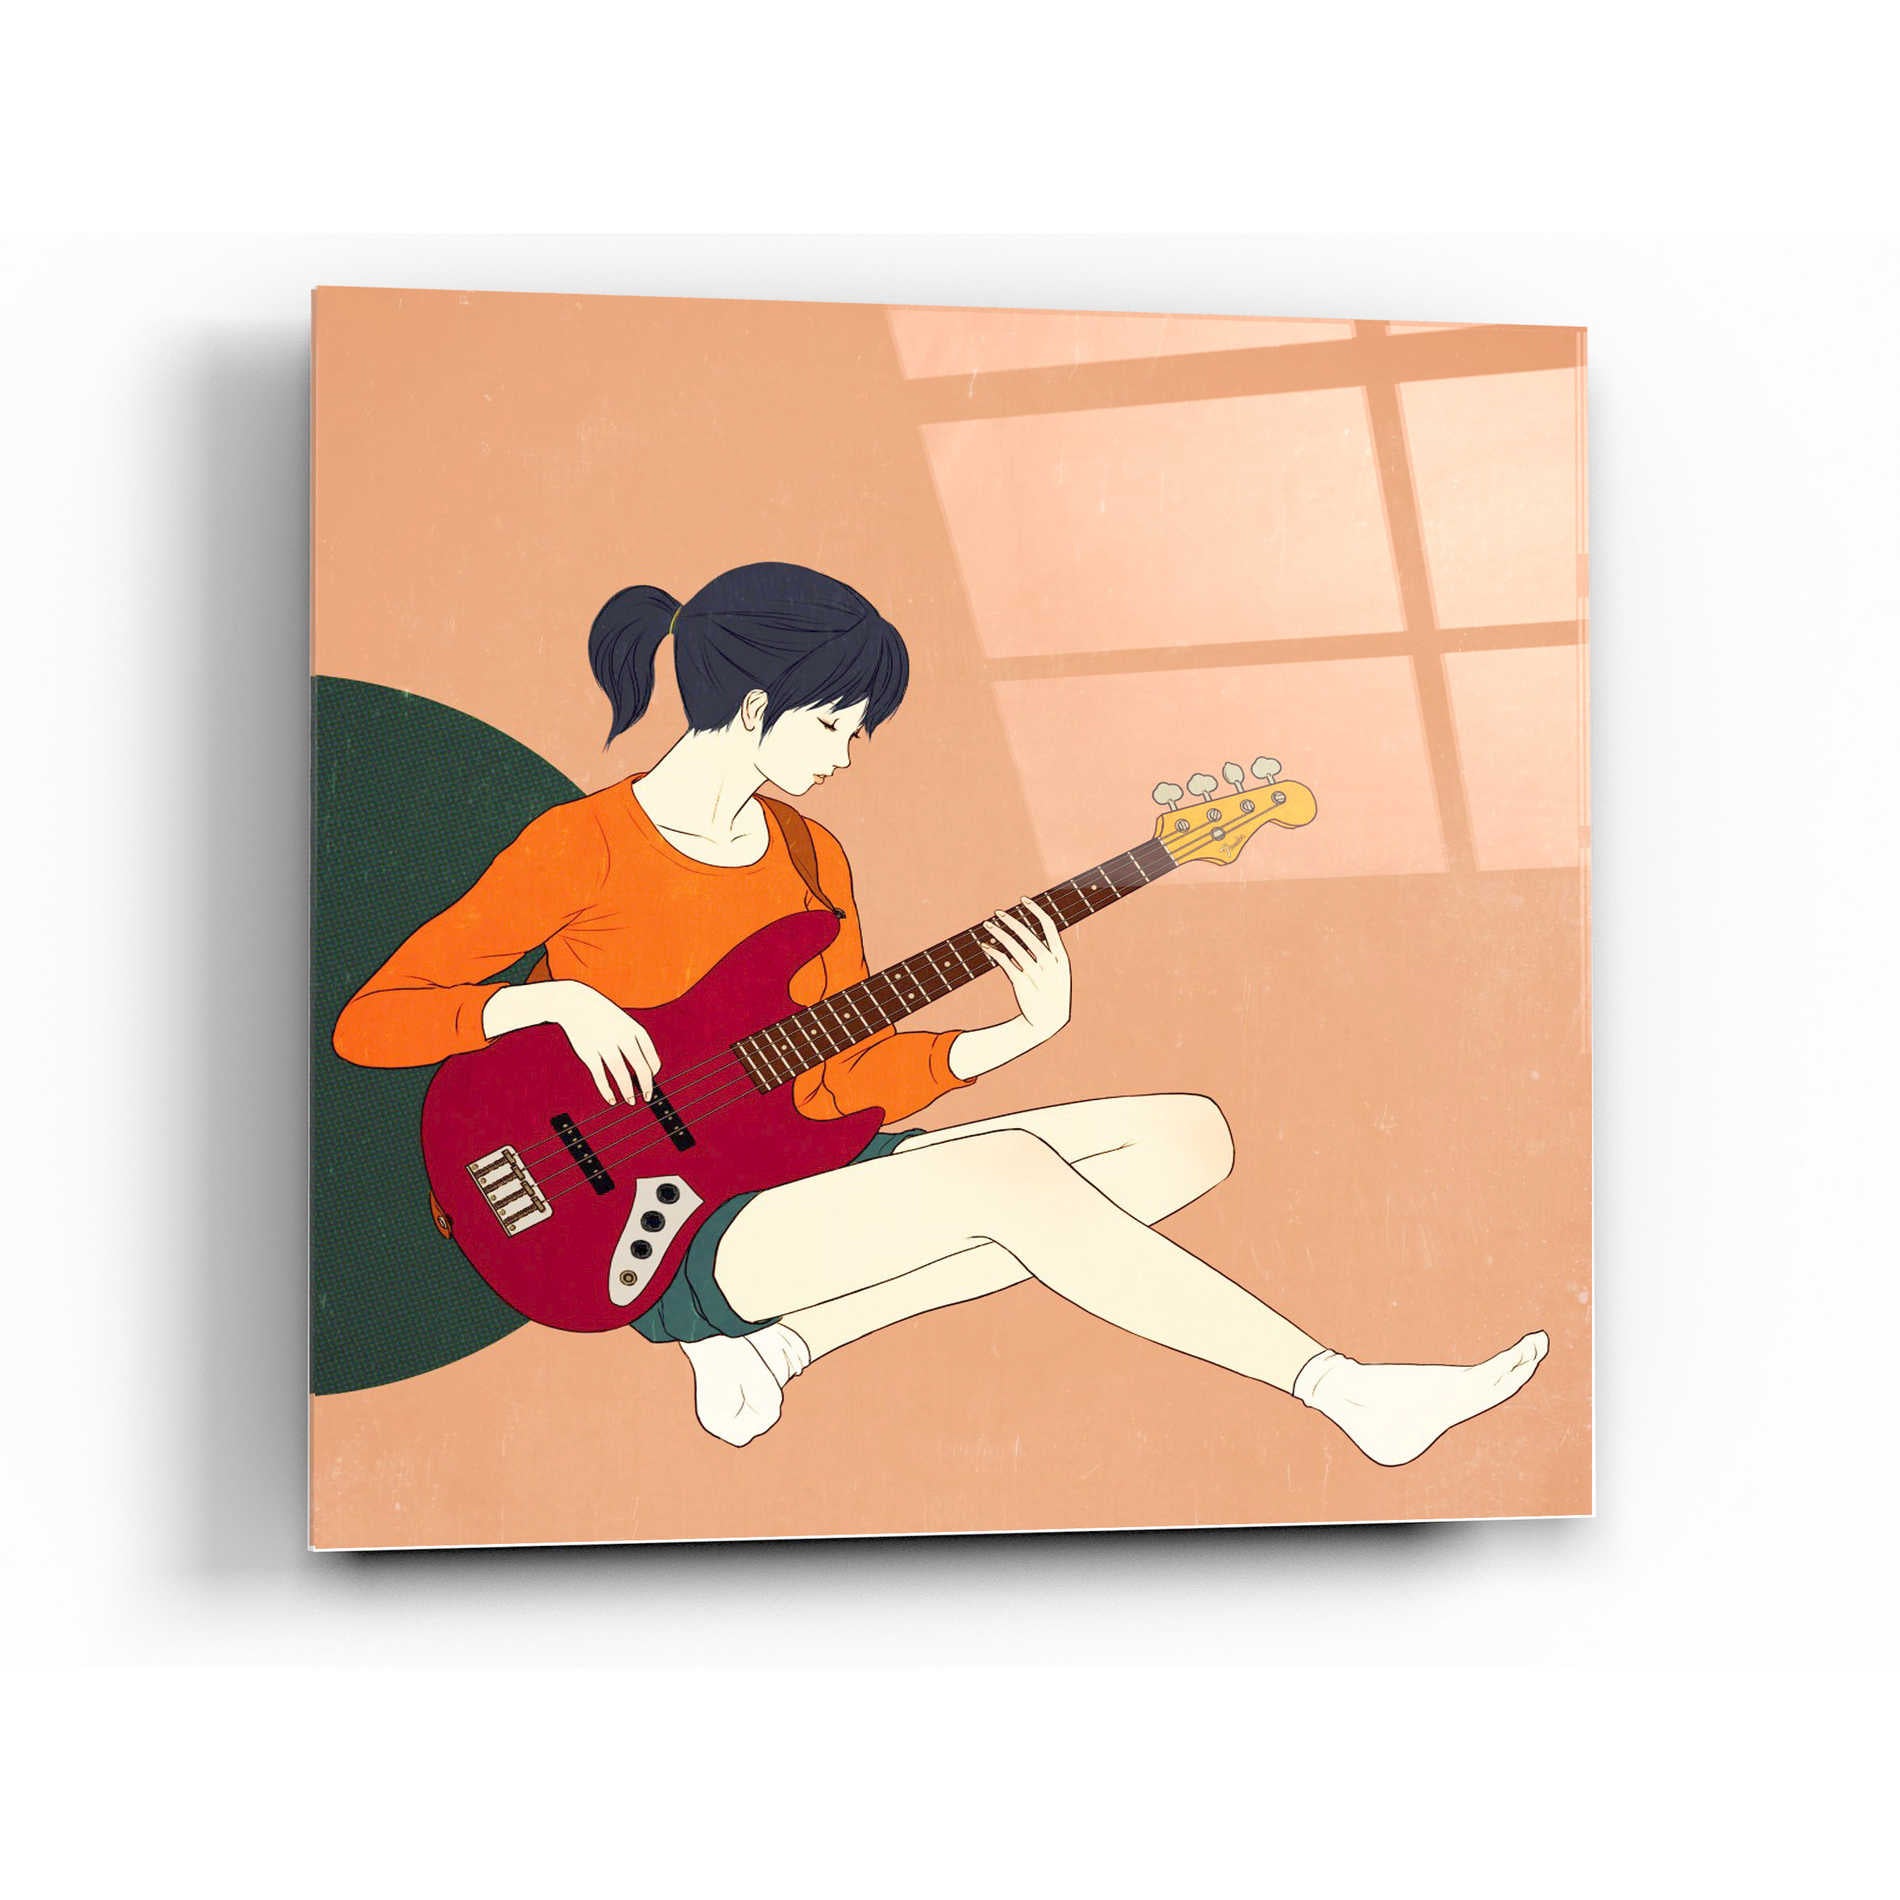 Epic Art 'Playing The Bass' by Sai Tamiya, Acrylic Glass Wall Art,24x24